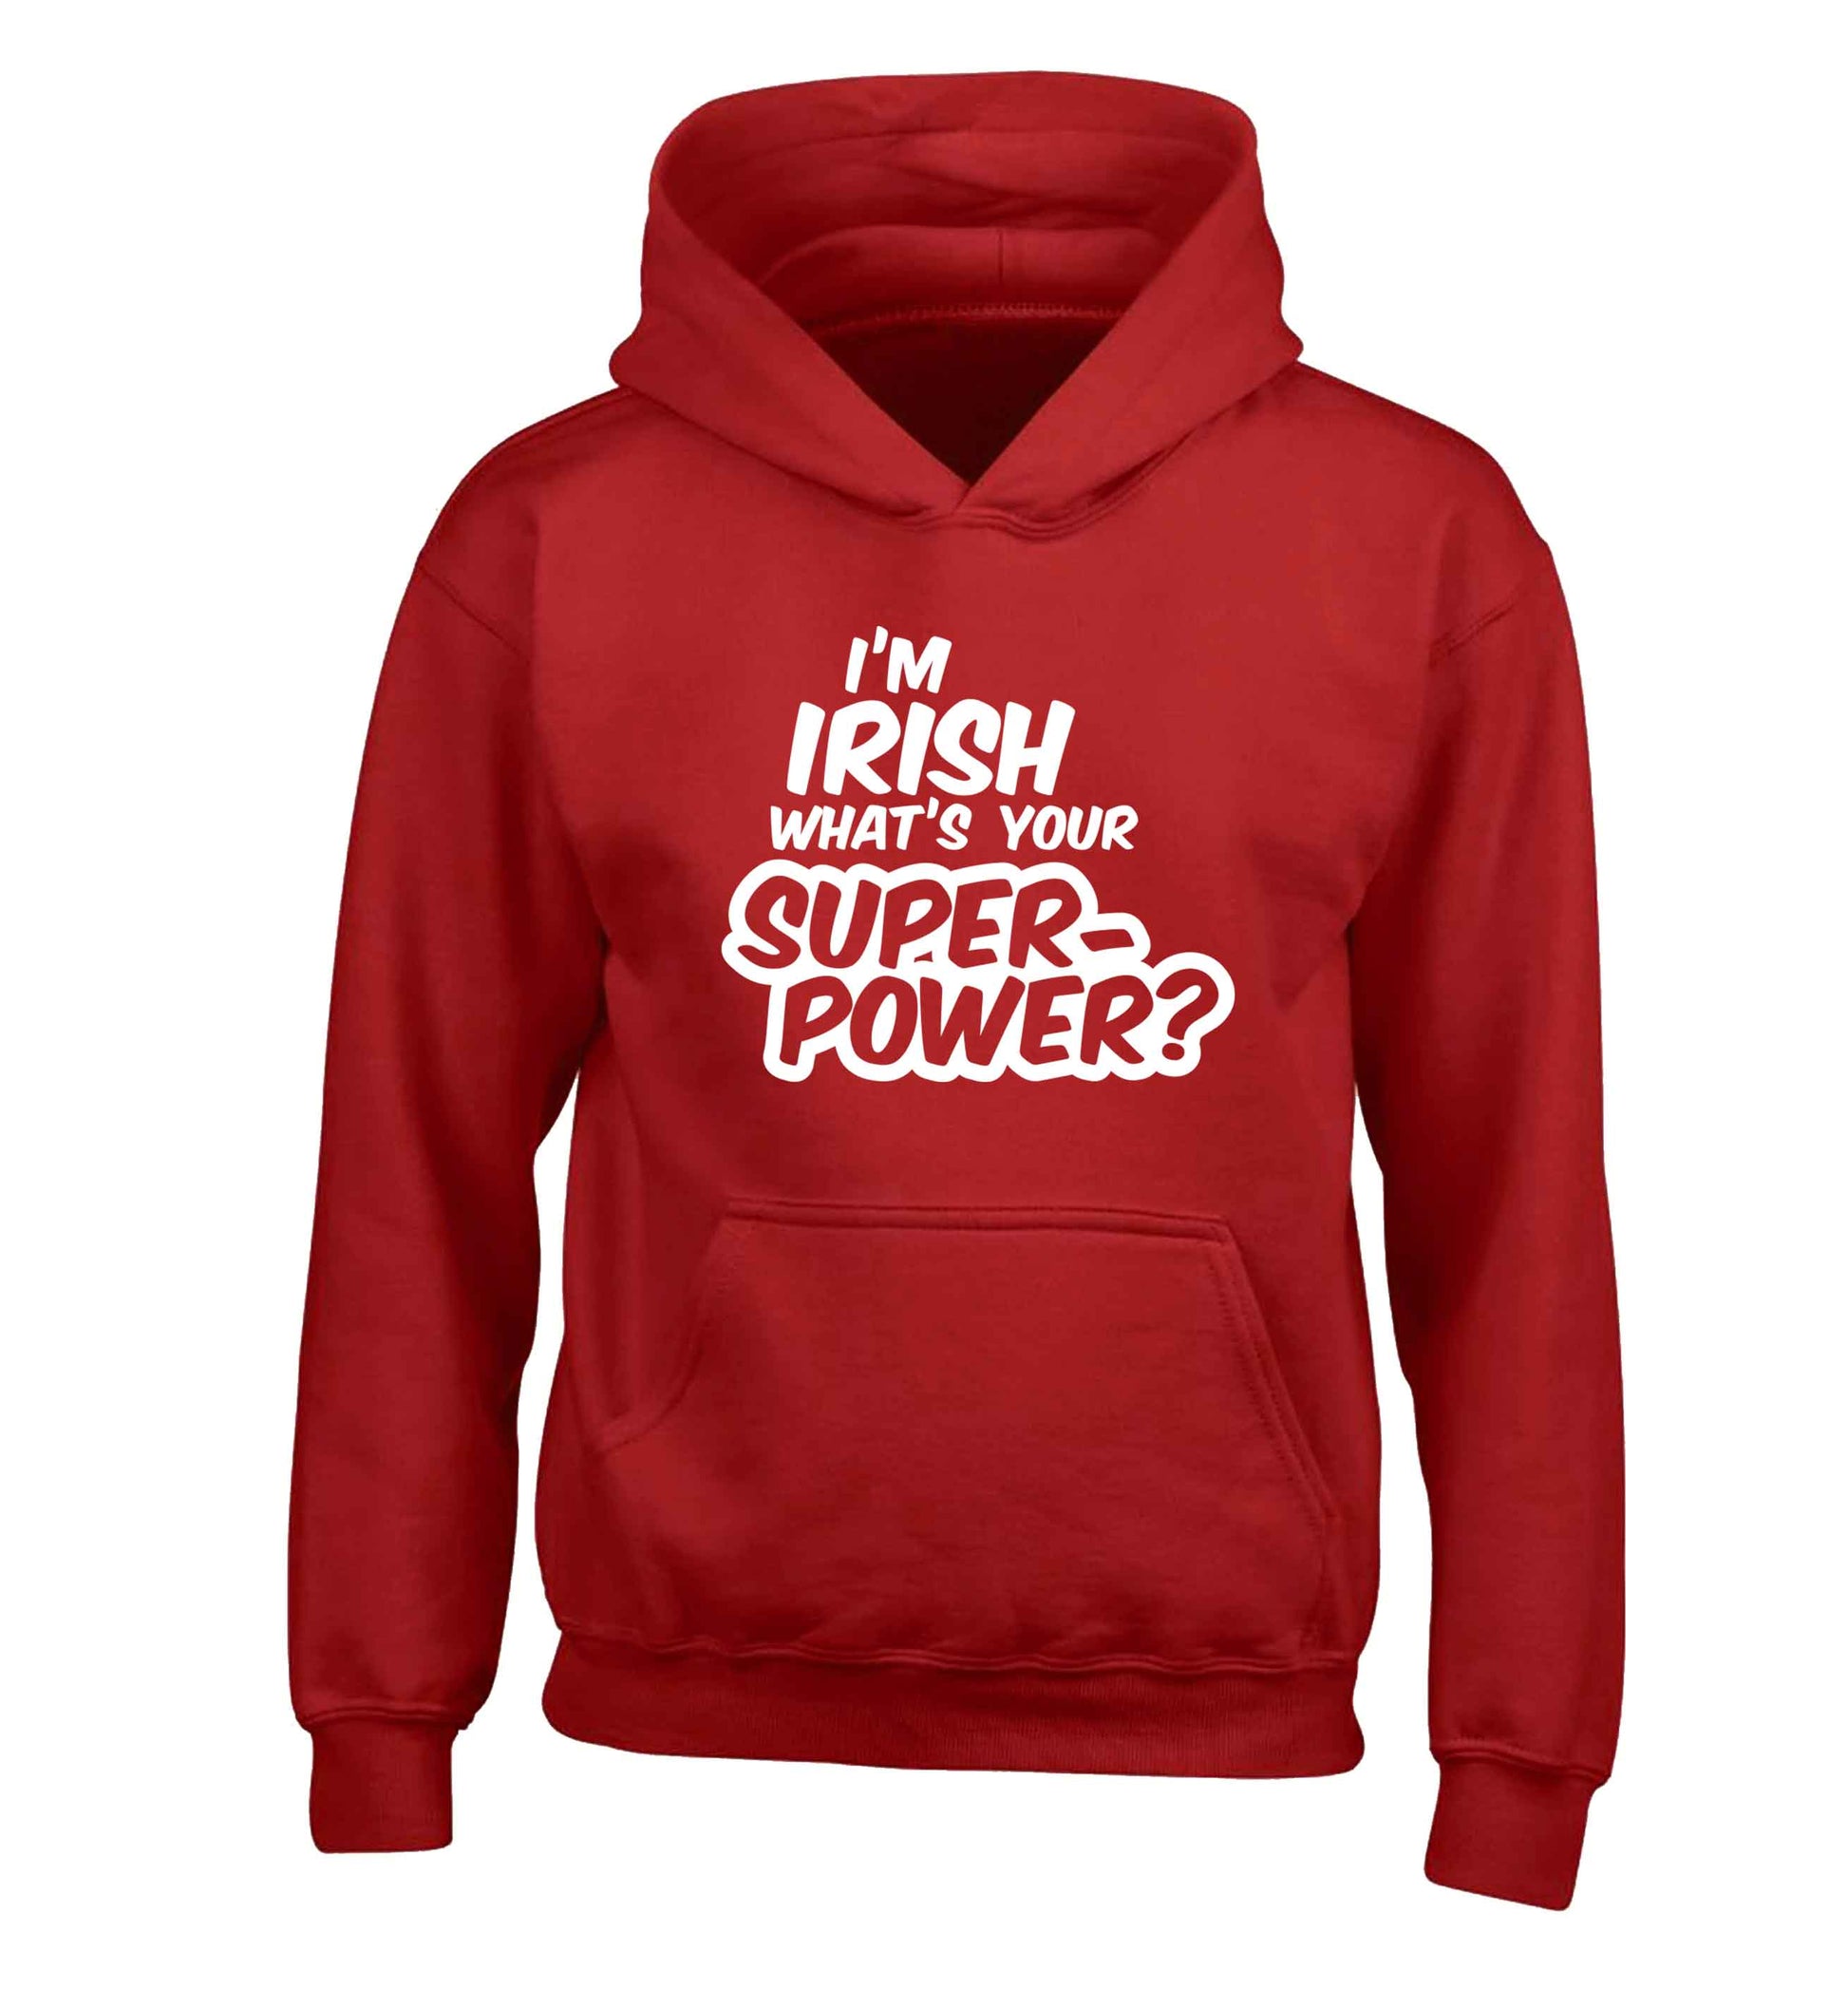 I'm Irish what's your superpower? children's red hoodie 12-13 Years